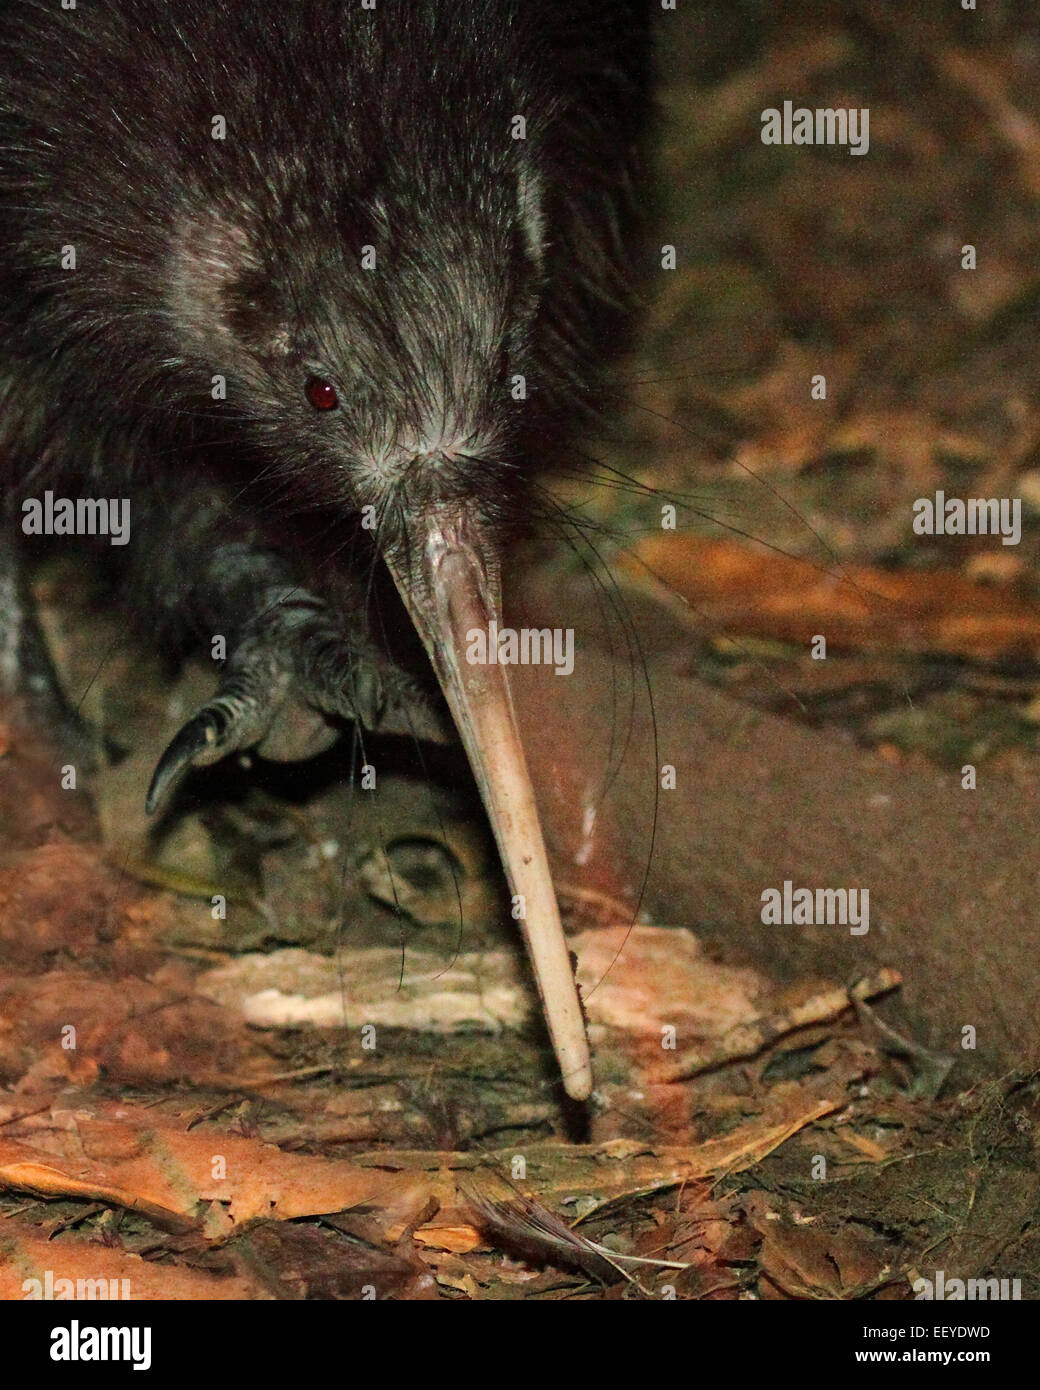 Eine Kiwi Hervorhebung seines großen Schnabels während des Gehens. Stockfoto